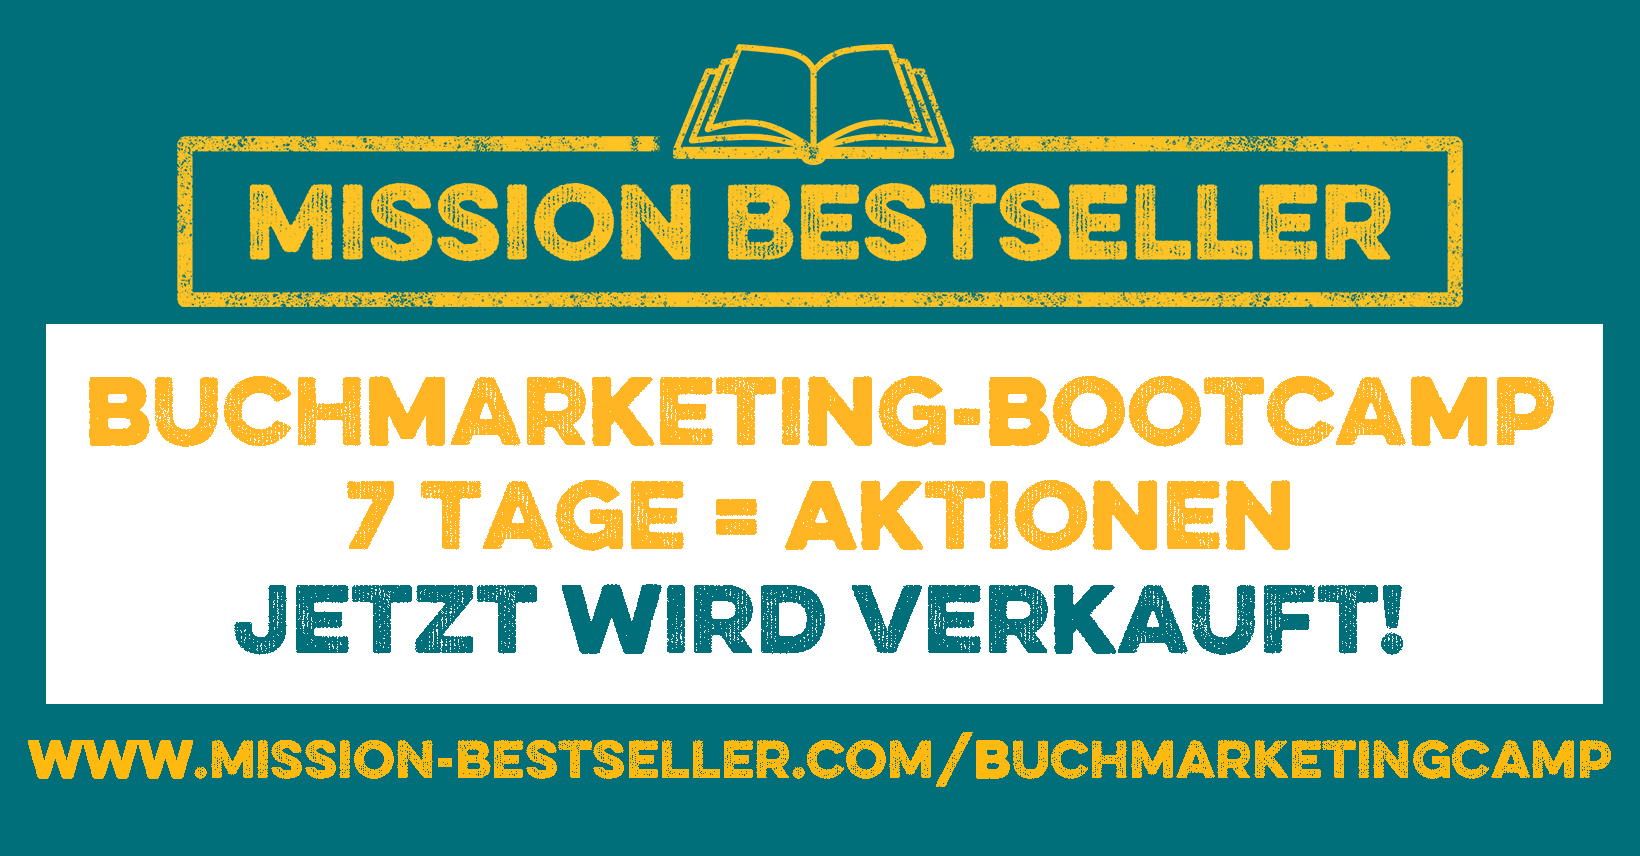 Mission Bestseller online Buchmarketing-Bootcamp - 7 Tage = 7 Aktionen - jetzt wird verkauft